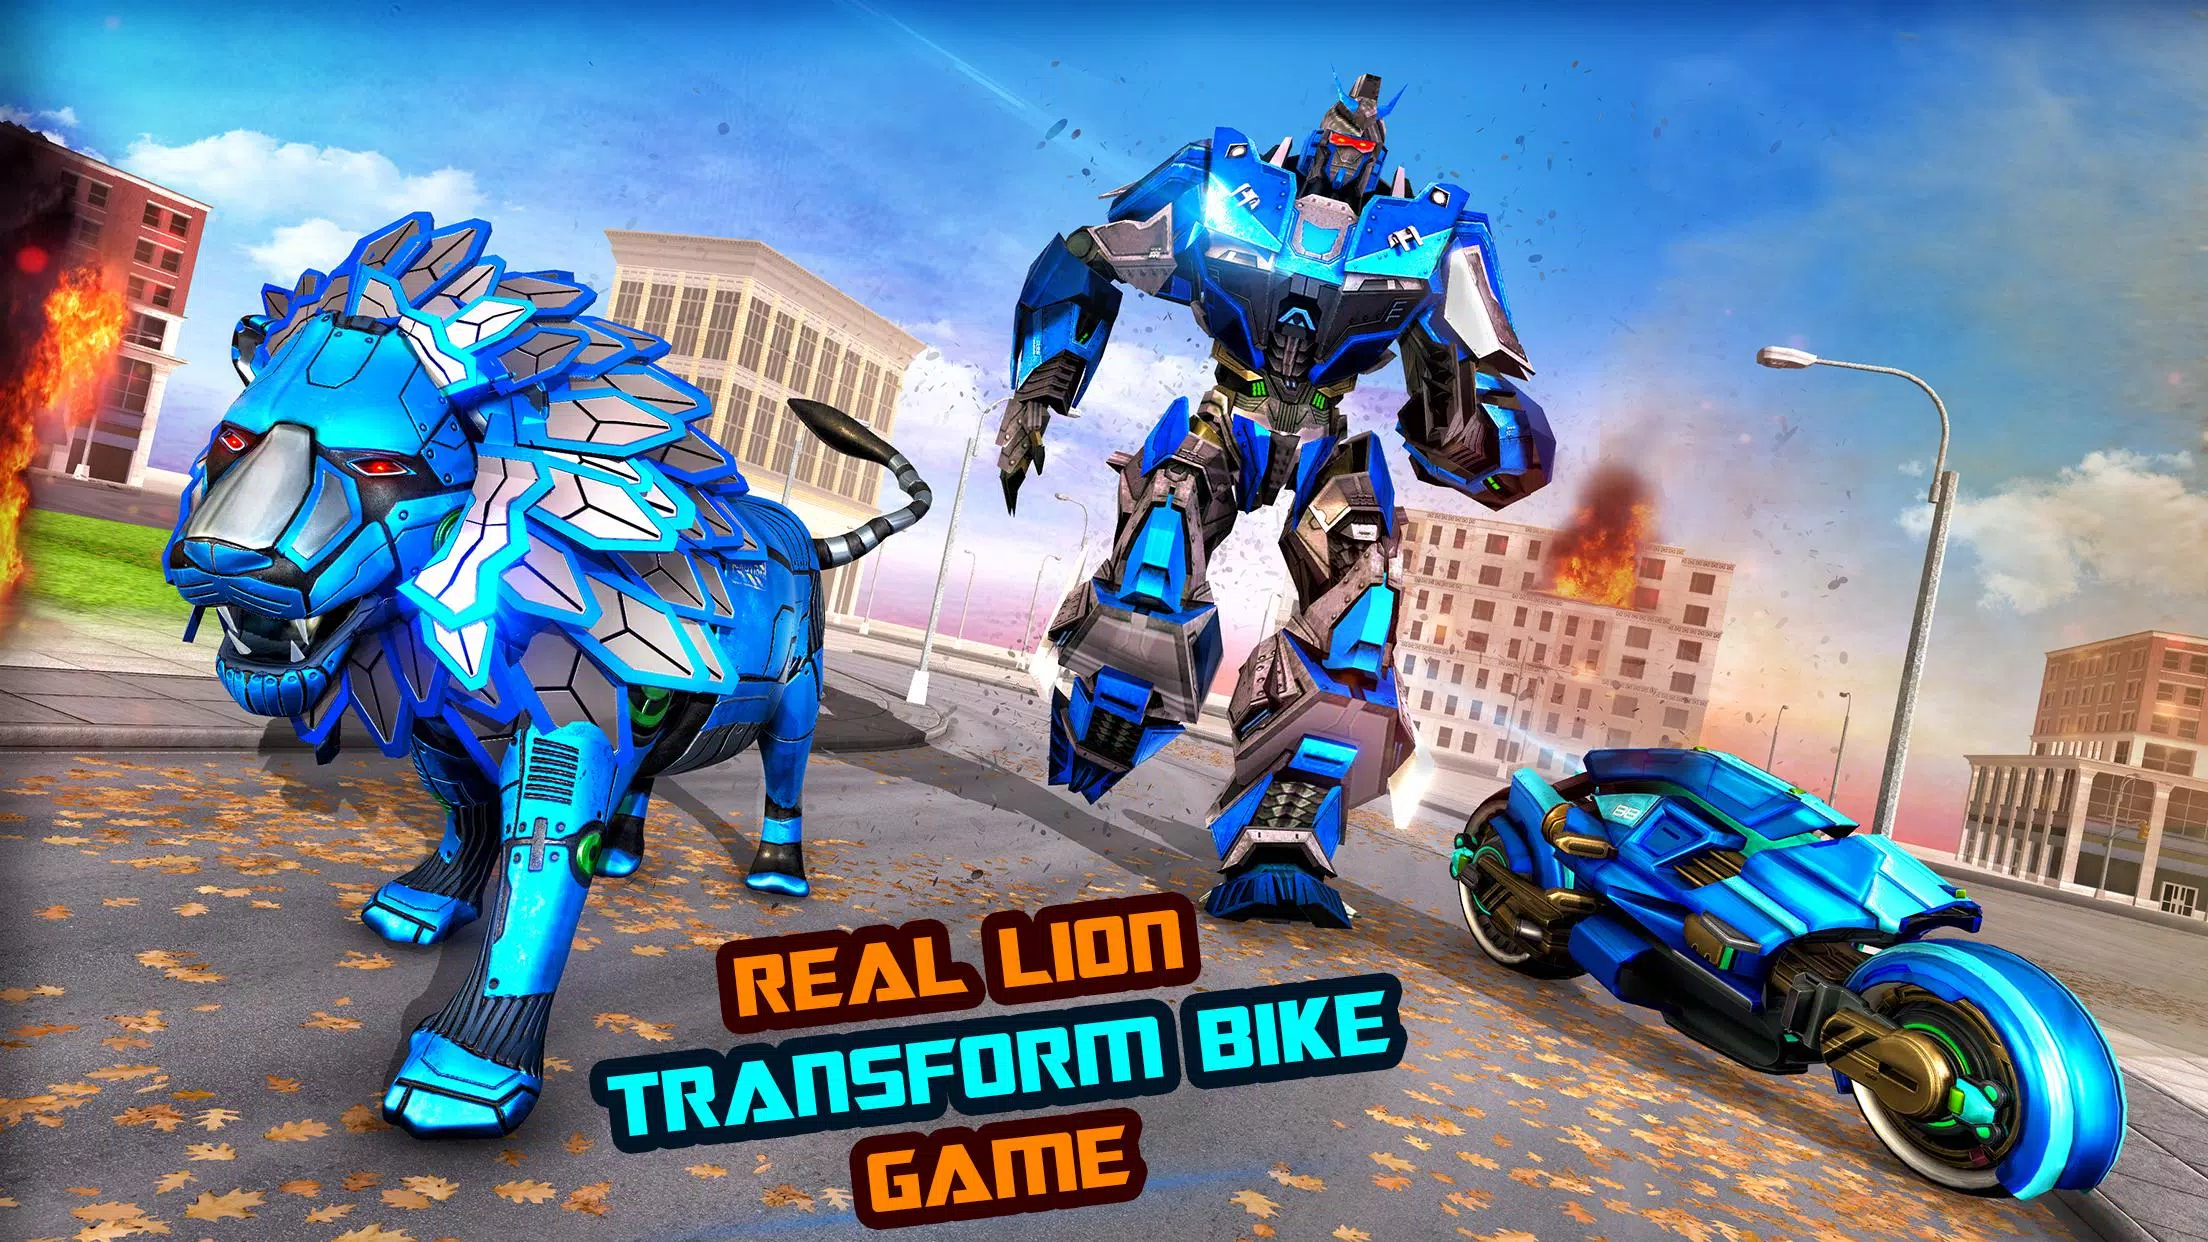 Descarga de APK de Real Lion Transform Robot Hero: Robot Games para Android